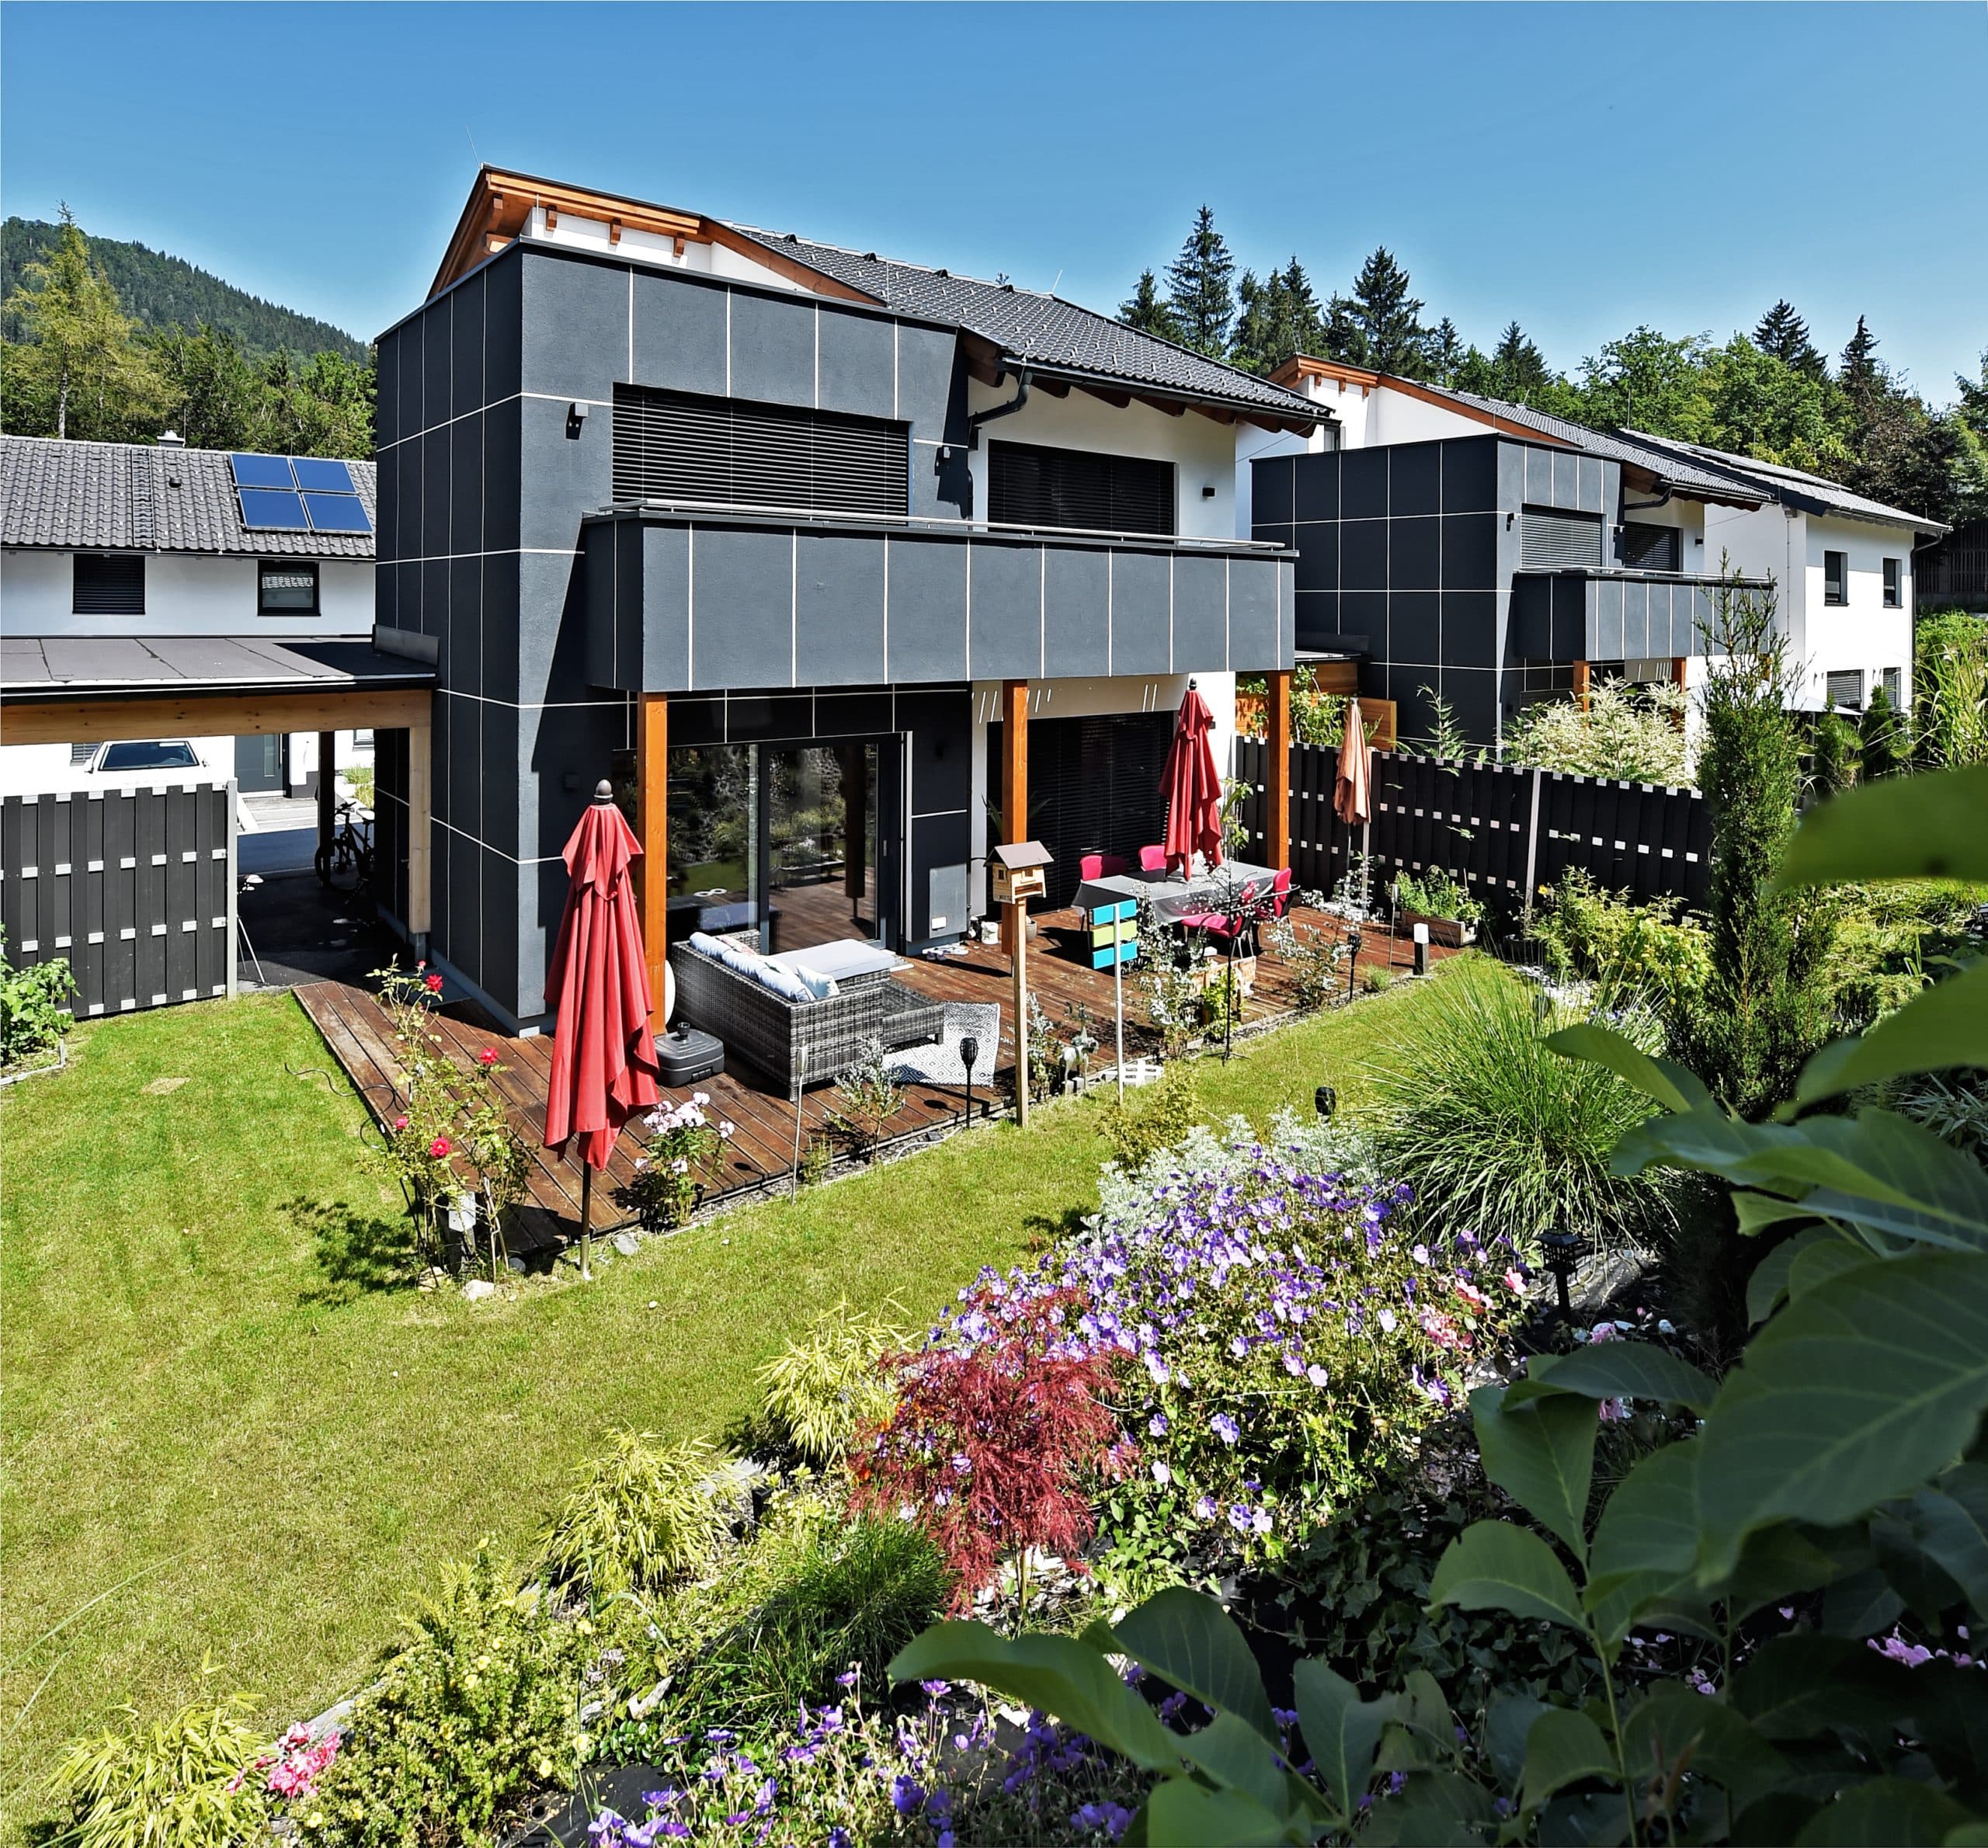 ERLER BAU GmbH zeigt ein Einfamilienhaus mit großer Terrasse mit Holzboden und gemütlichen Sitzmöbeln und gepflegtem Rasen.